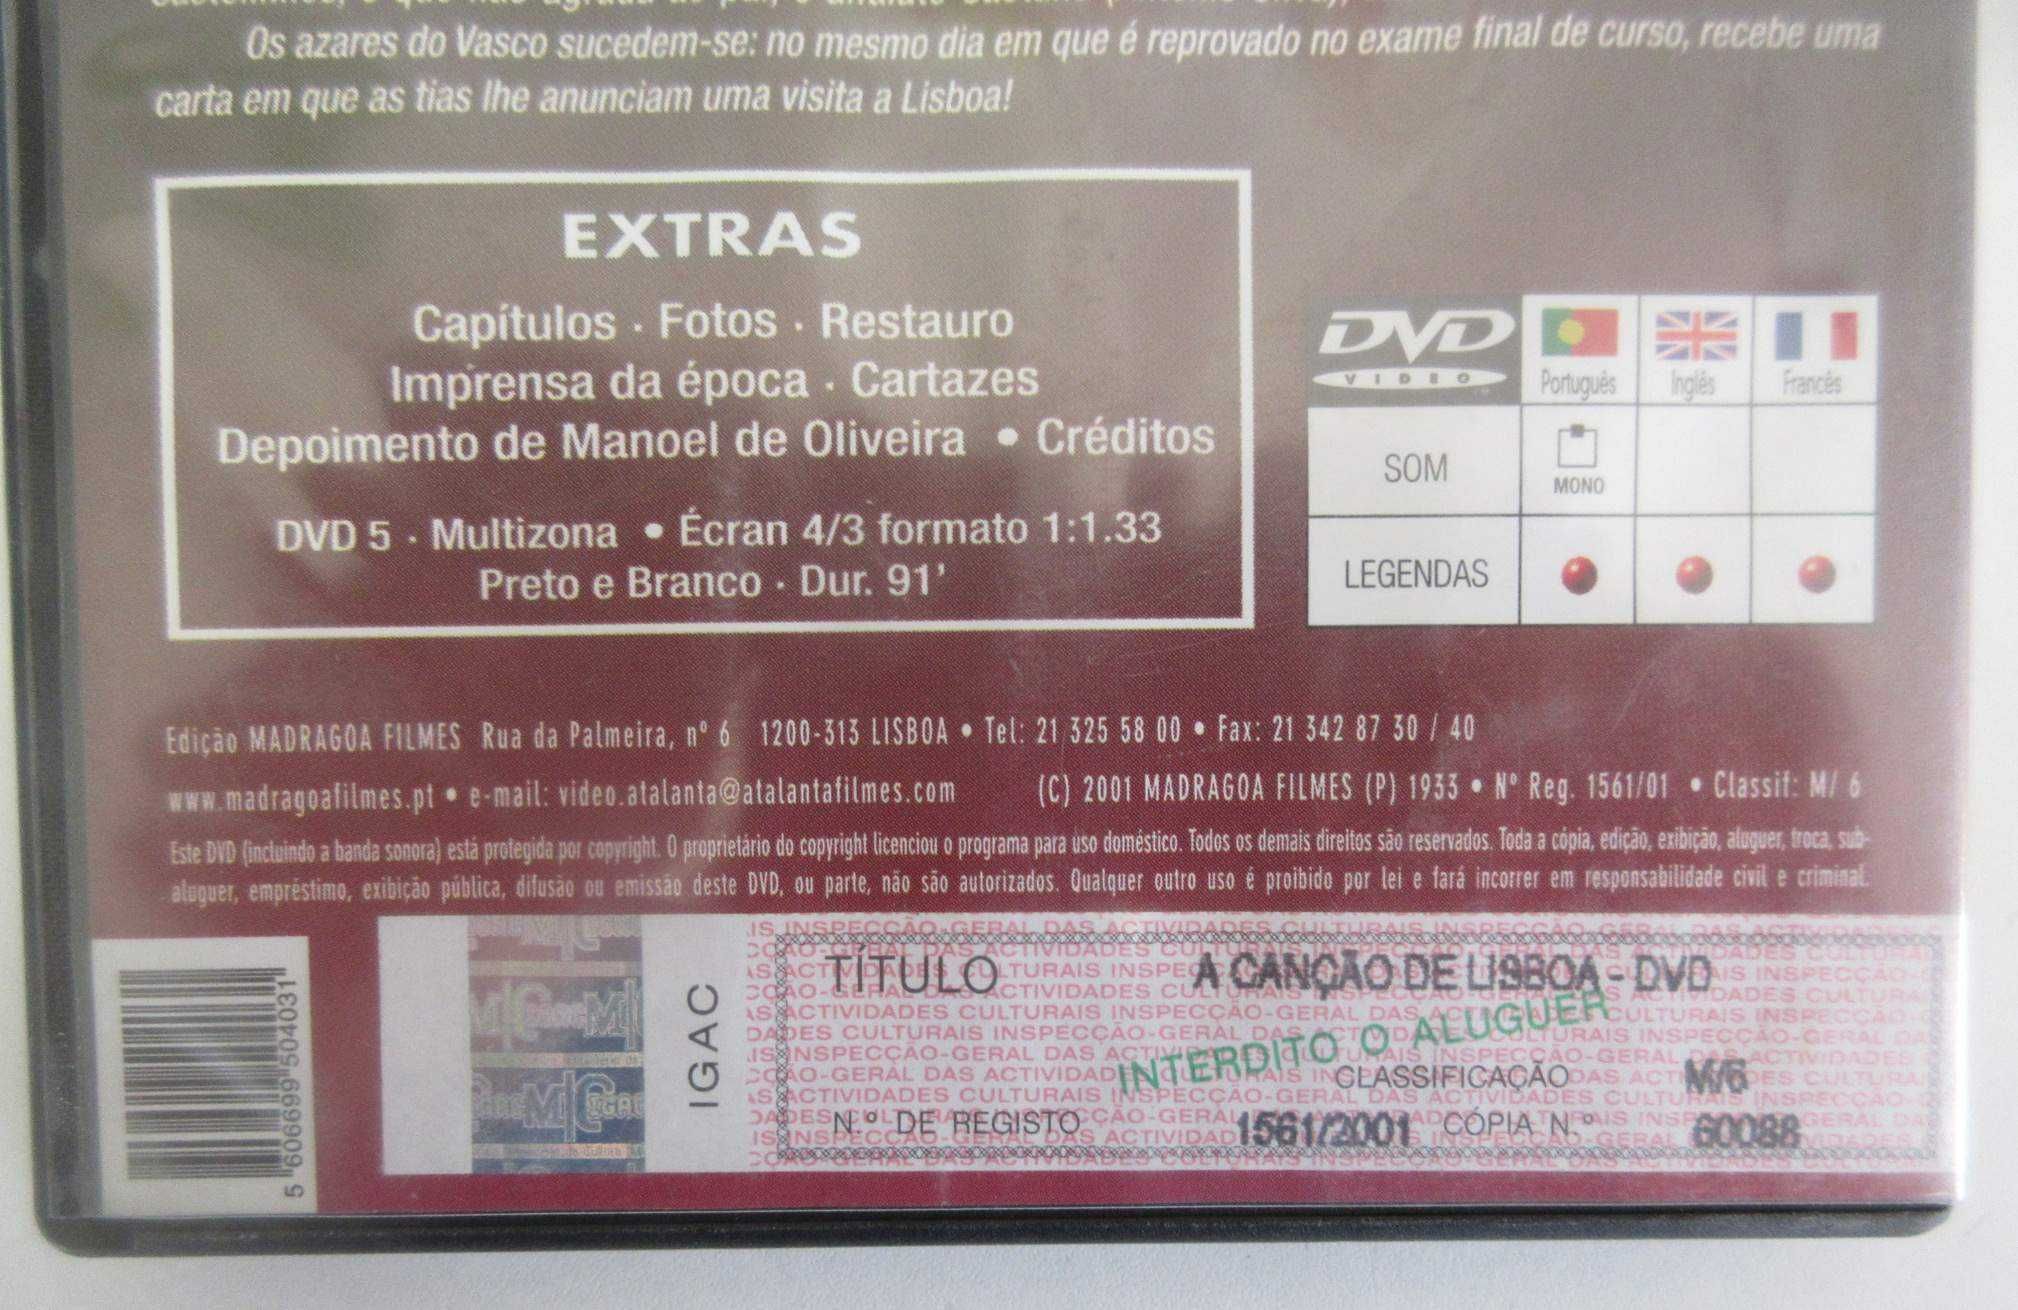 A CANÇÃO DE LISBOA (Vasco Santana / Beatriz Costa) (DVD)